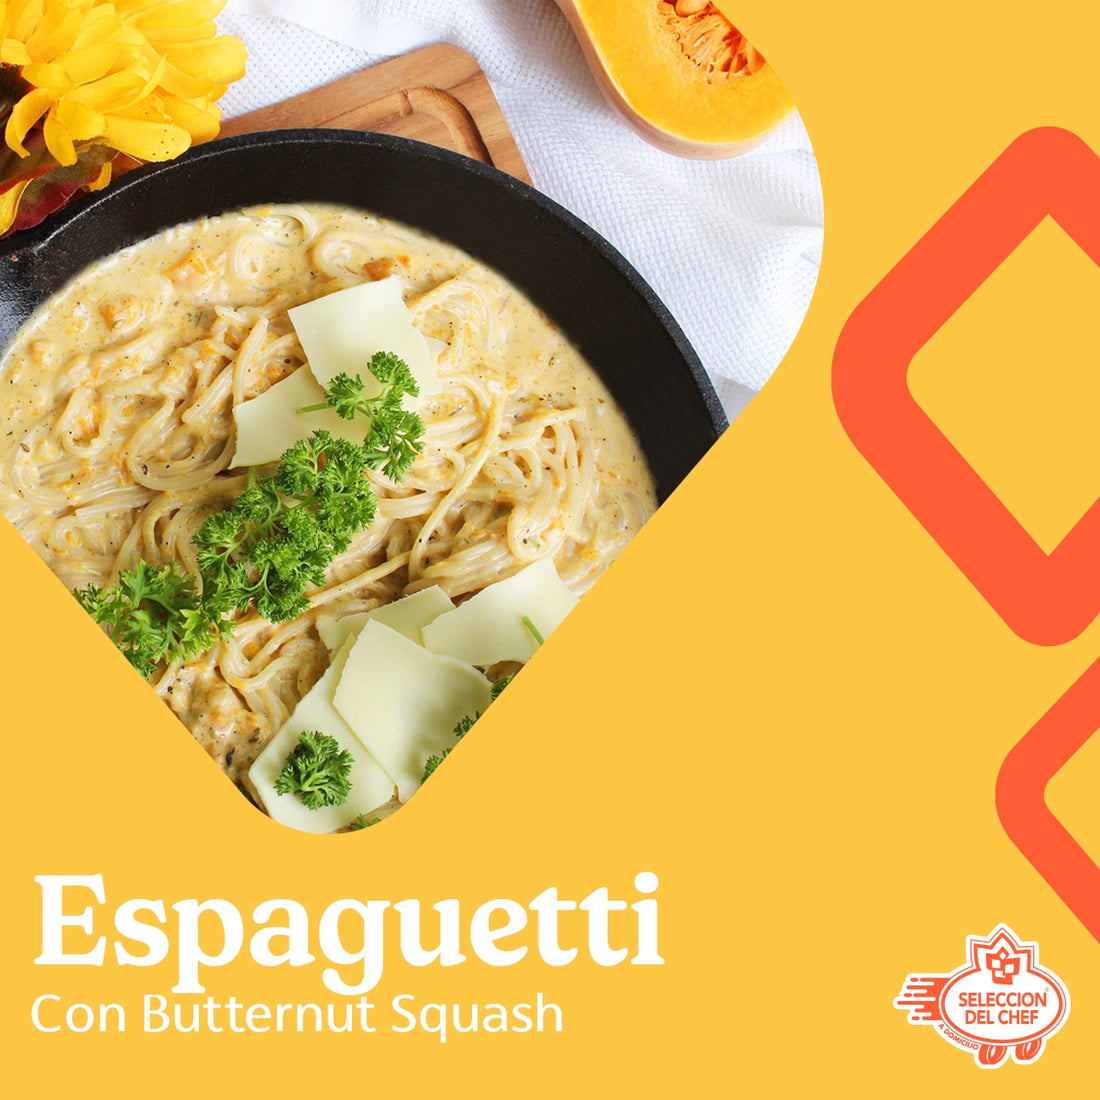 Espaguetti con Butternut squash